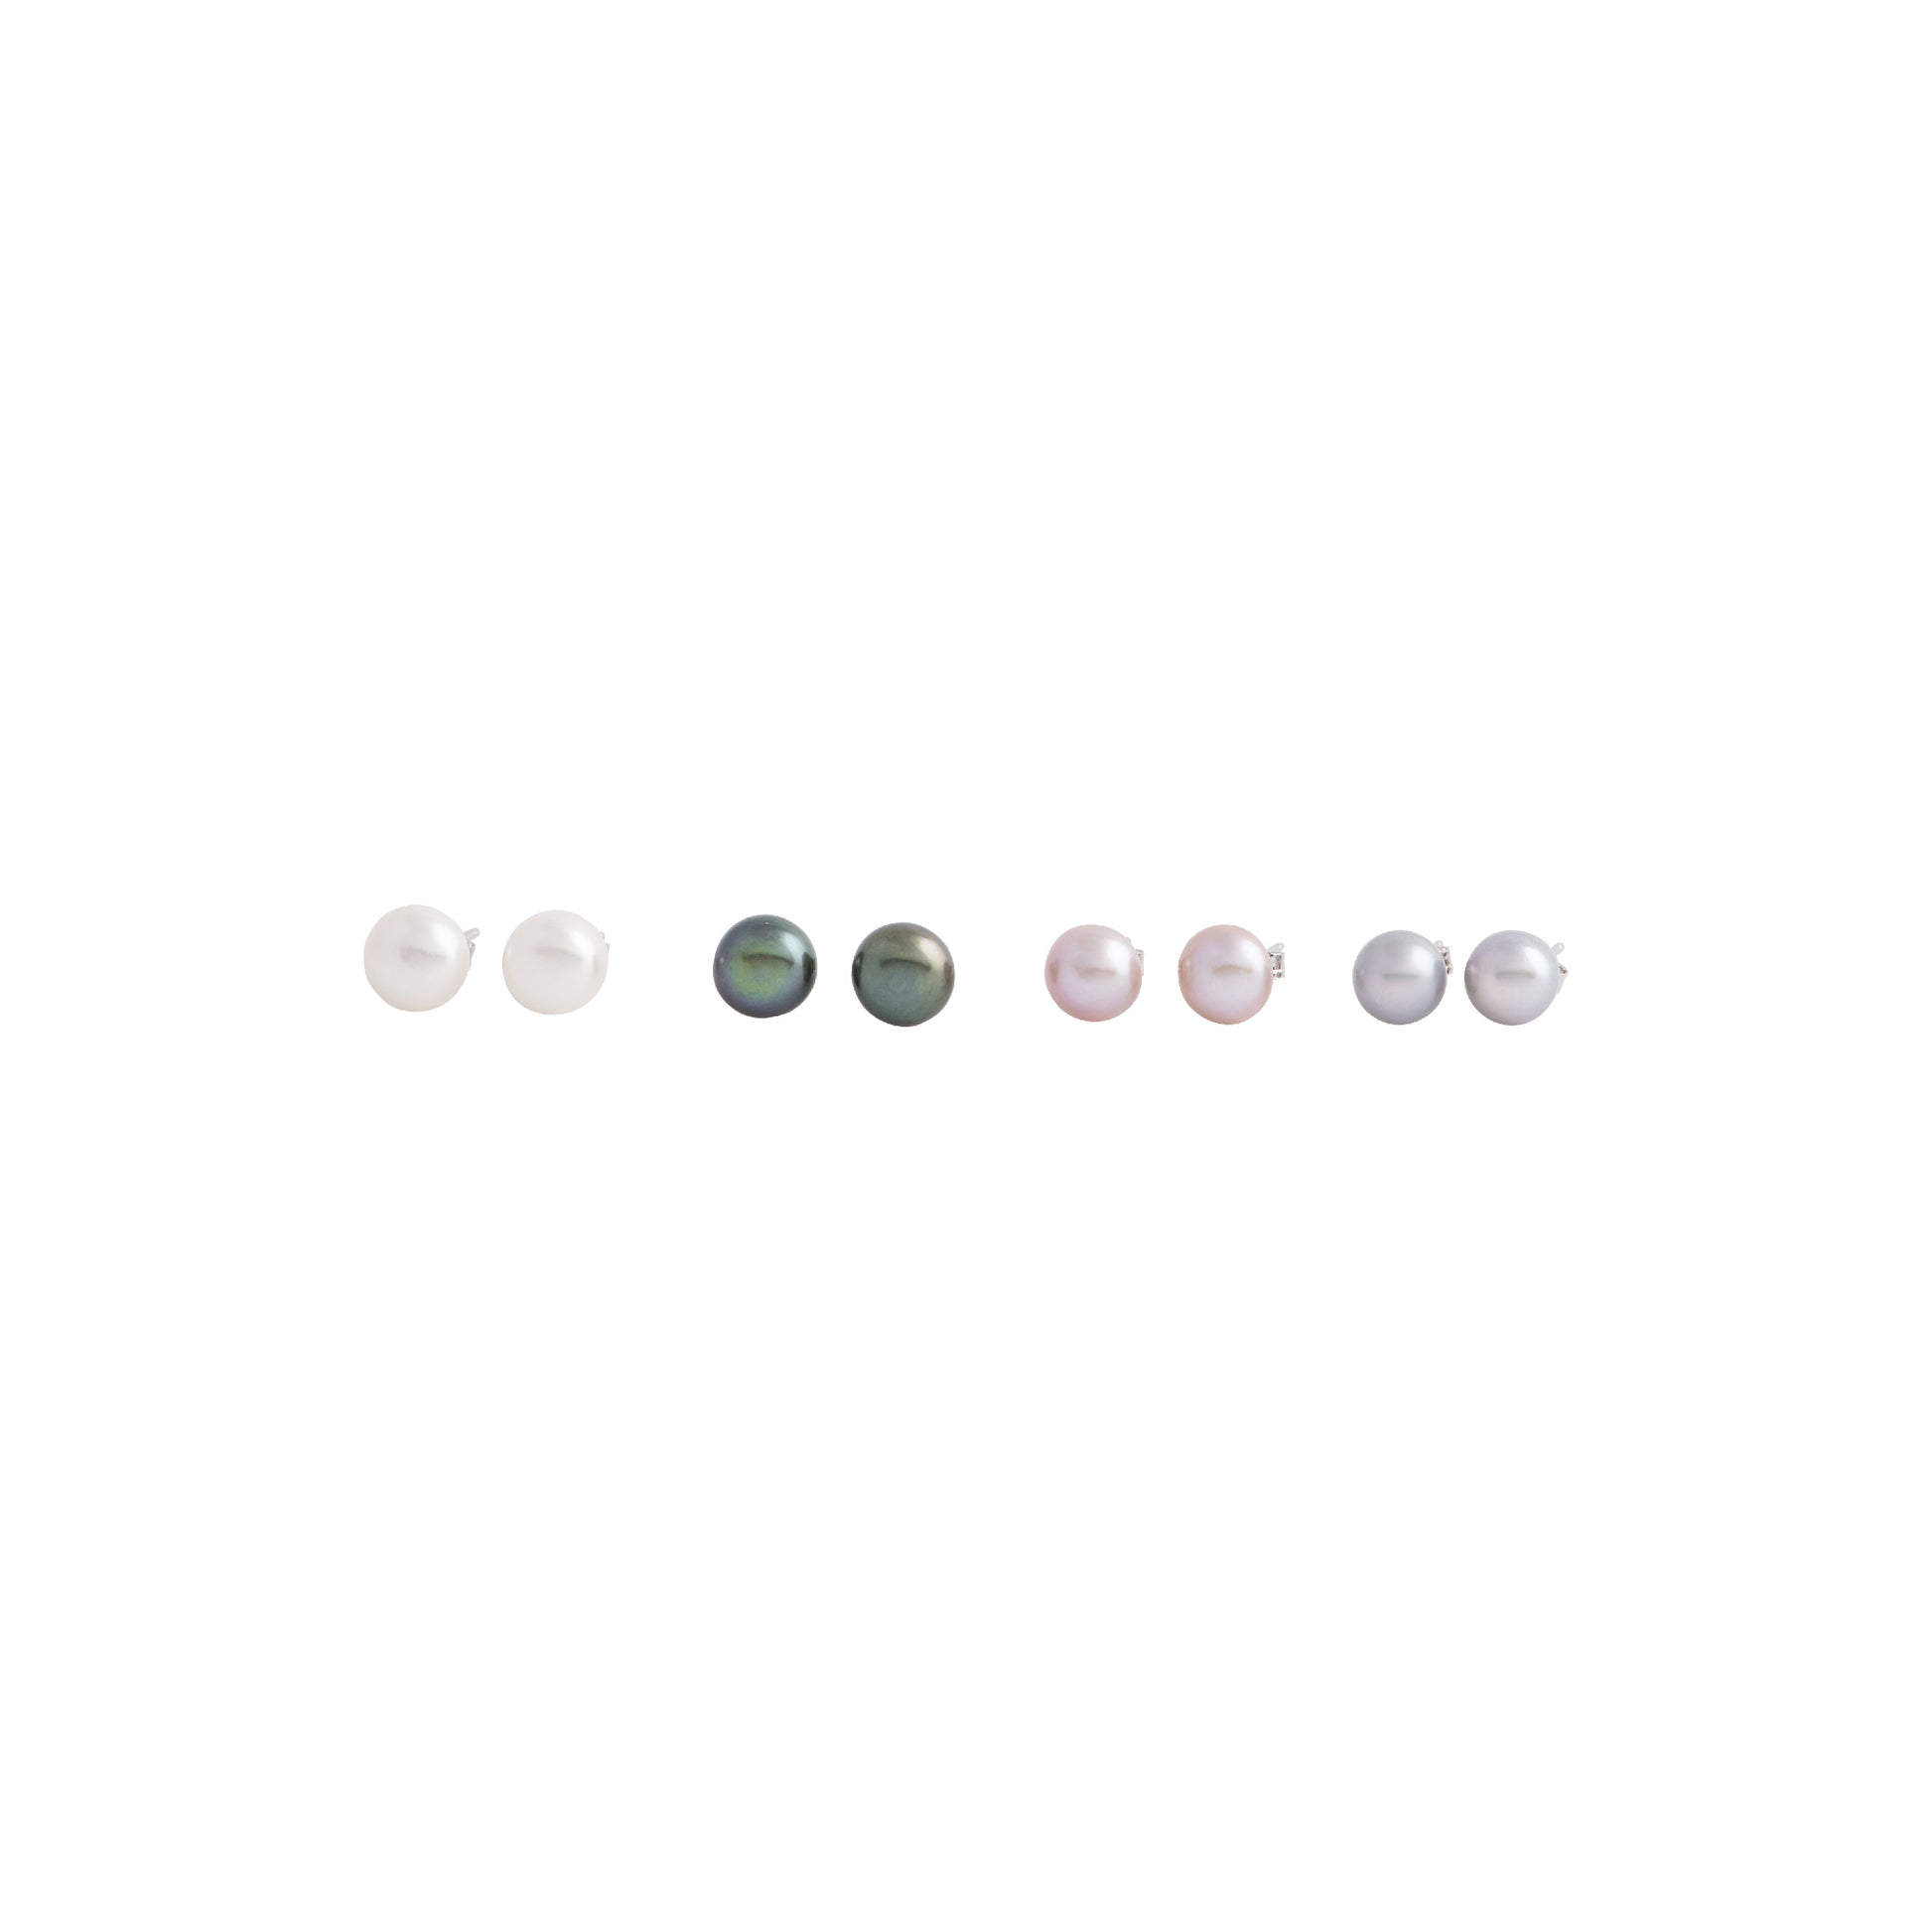 Amaya - Medium (8mm) pearl nickle-free earrings (All 4 colors)